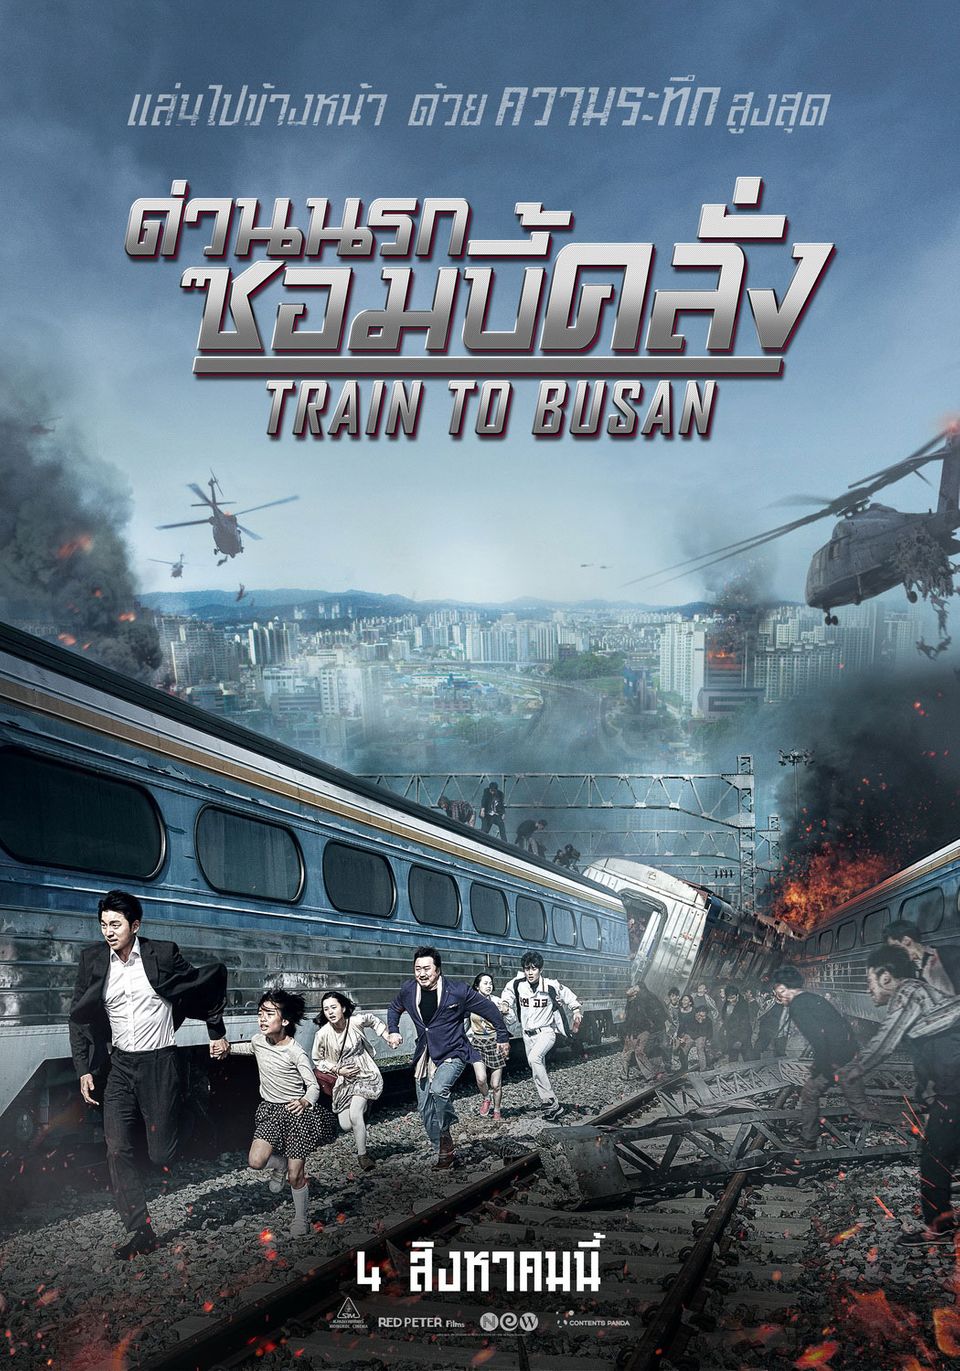 ภาพยนตร์เกาหลี “ด่วนนรก ซอมบี้คลั่ง” (TRAIN TO BUSAN)